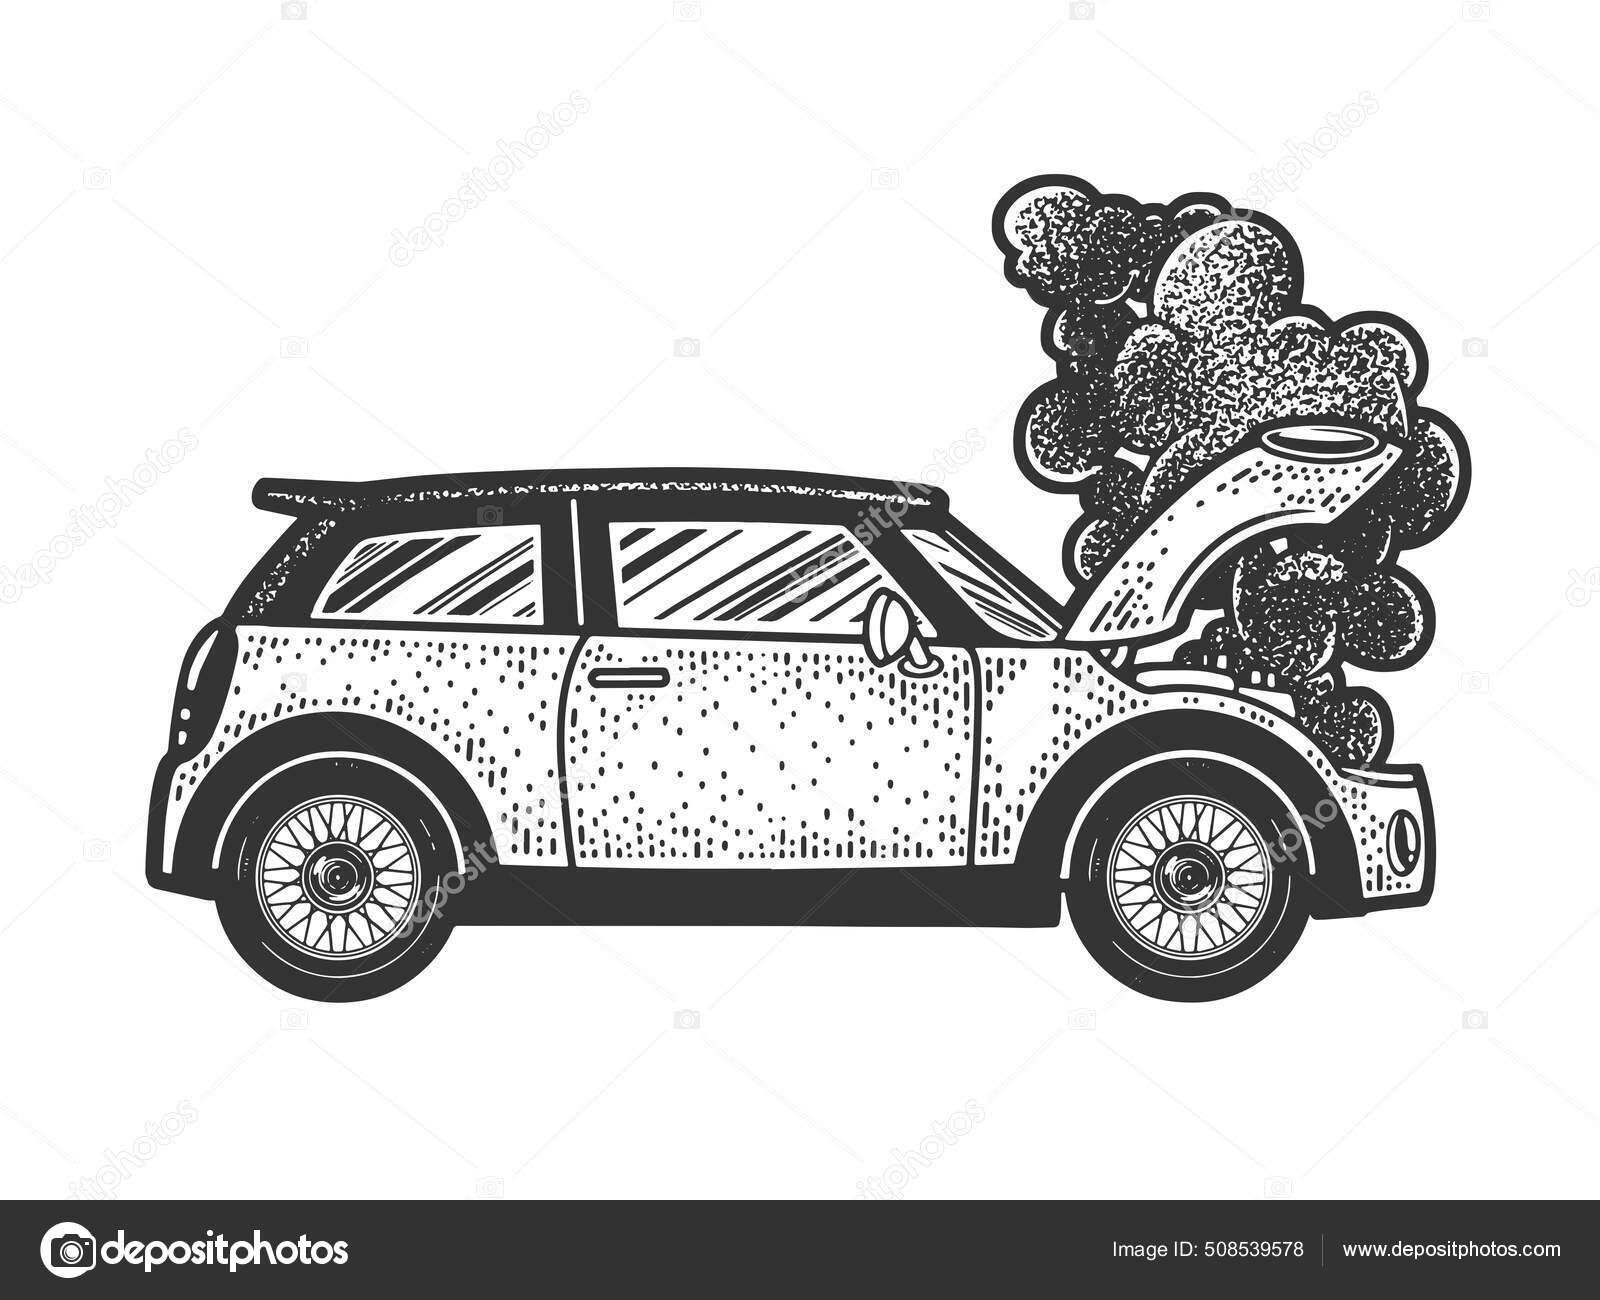 Rauchendes Auto in Feuer Skizze Gravurvektorillustration.  T-Shirt-Print-Design. Rubbelbrett-Imitat. Handgezeichnetes  Schwarz-Weiß-Bild. Stock-Vektorgrafik von ©AlexanderPokusay 508539578